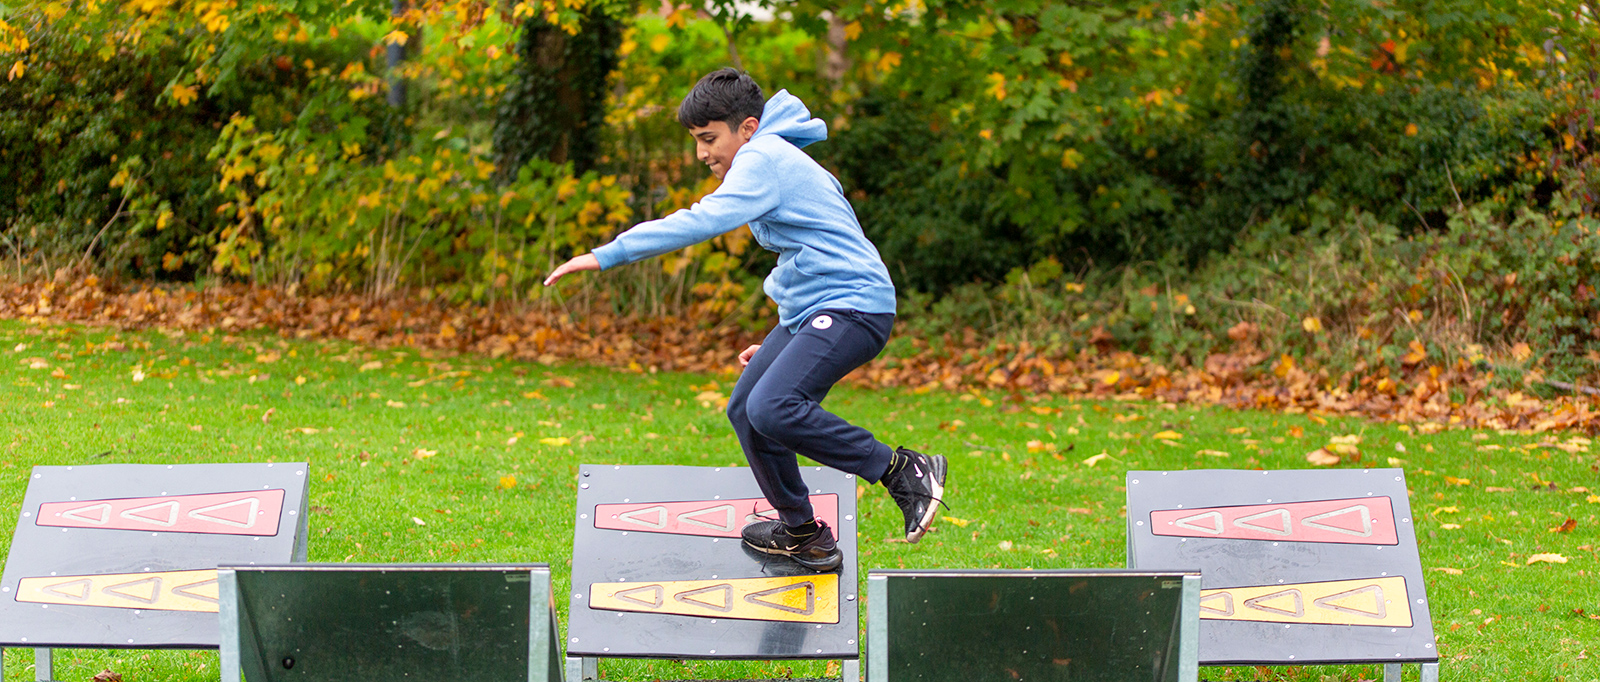 Parcours d'obstacles enfant + slackline de 15 m - France Trampoline